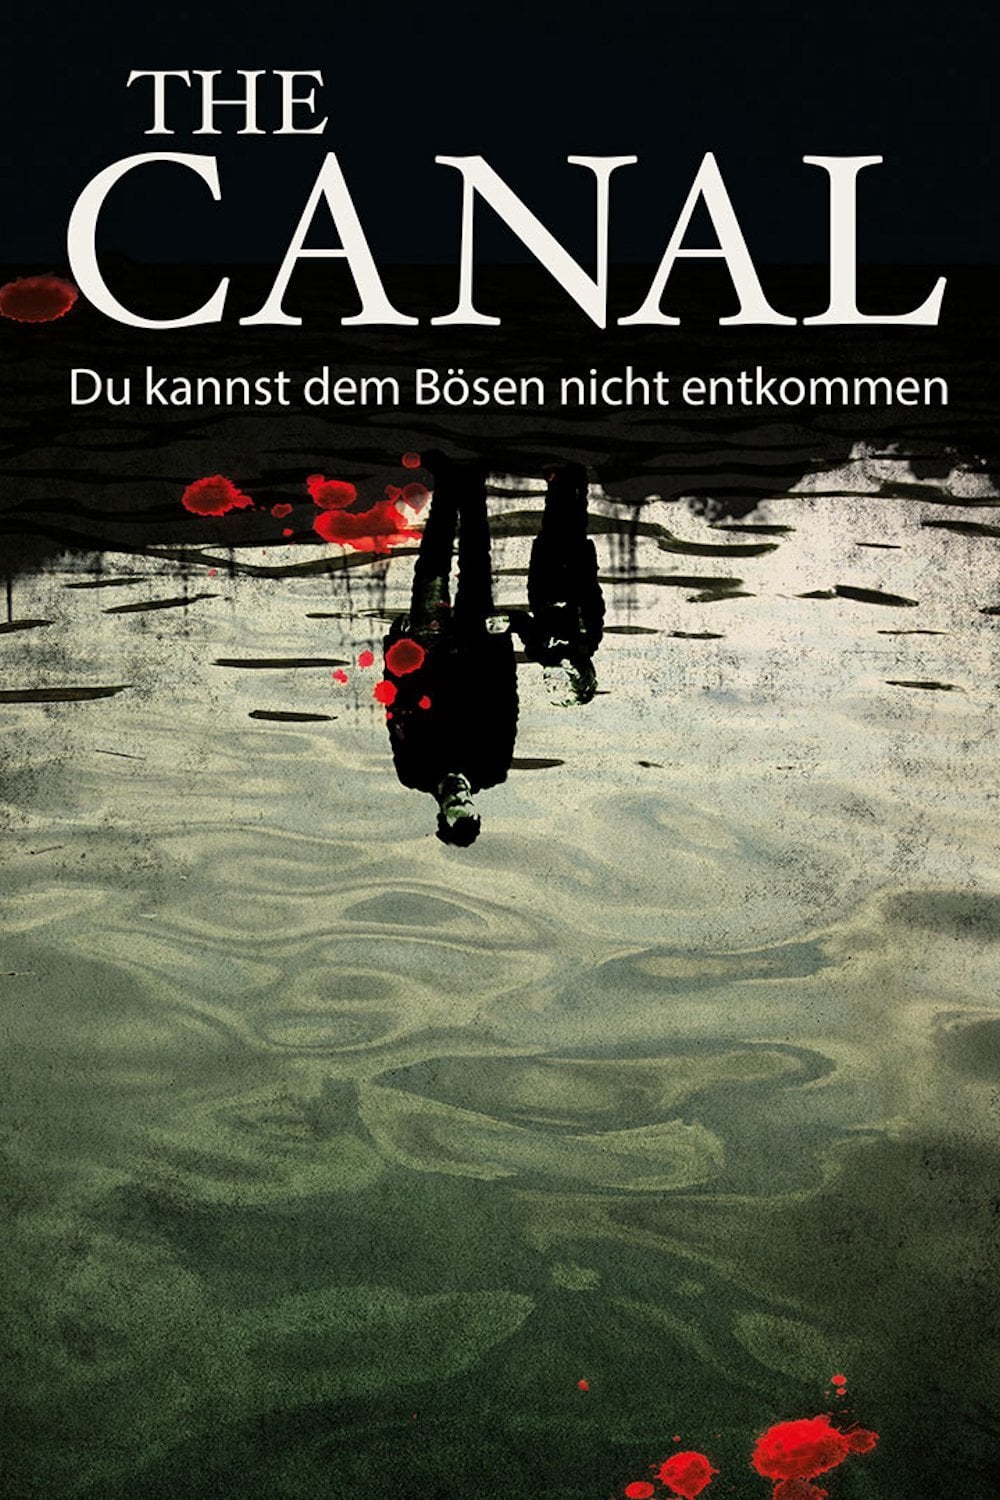 Plakat von "The Canal"